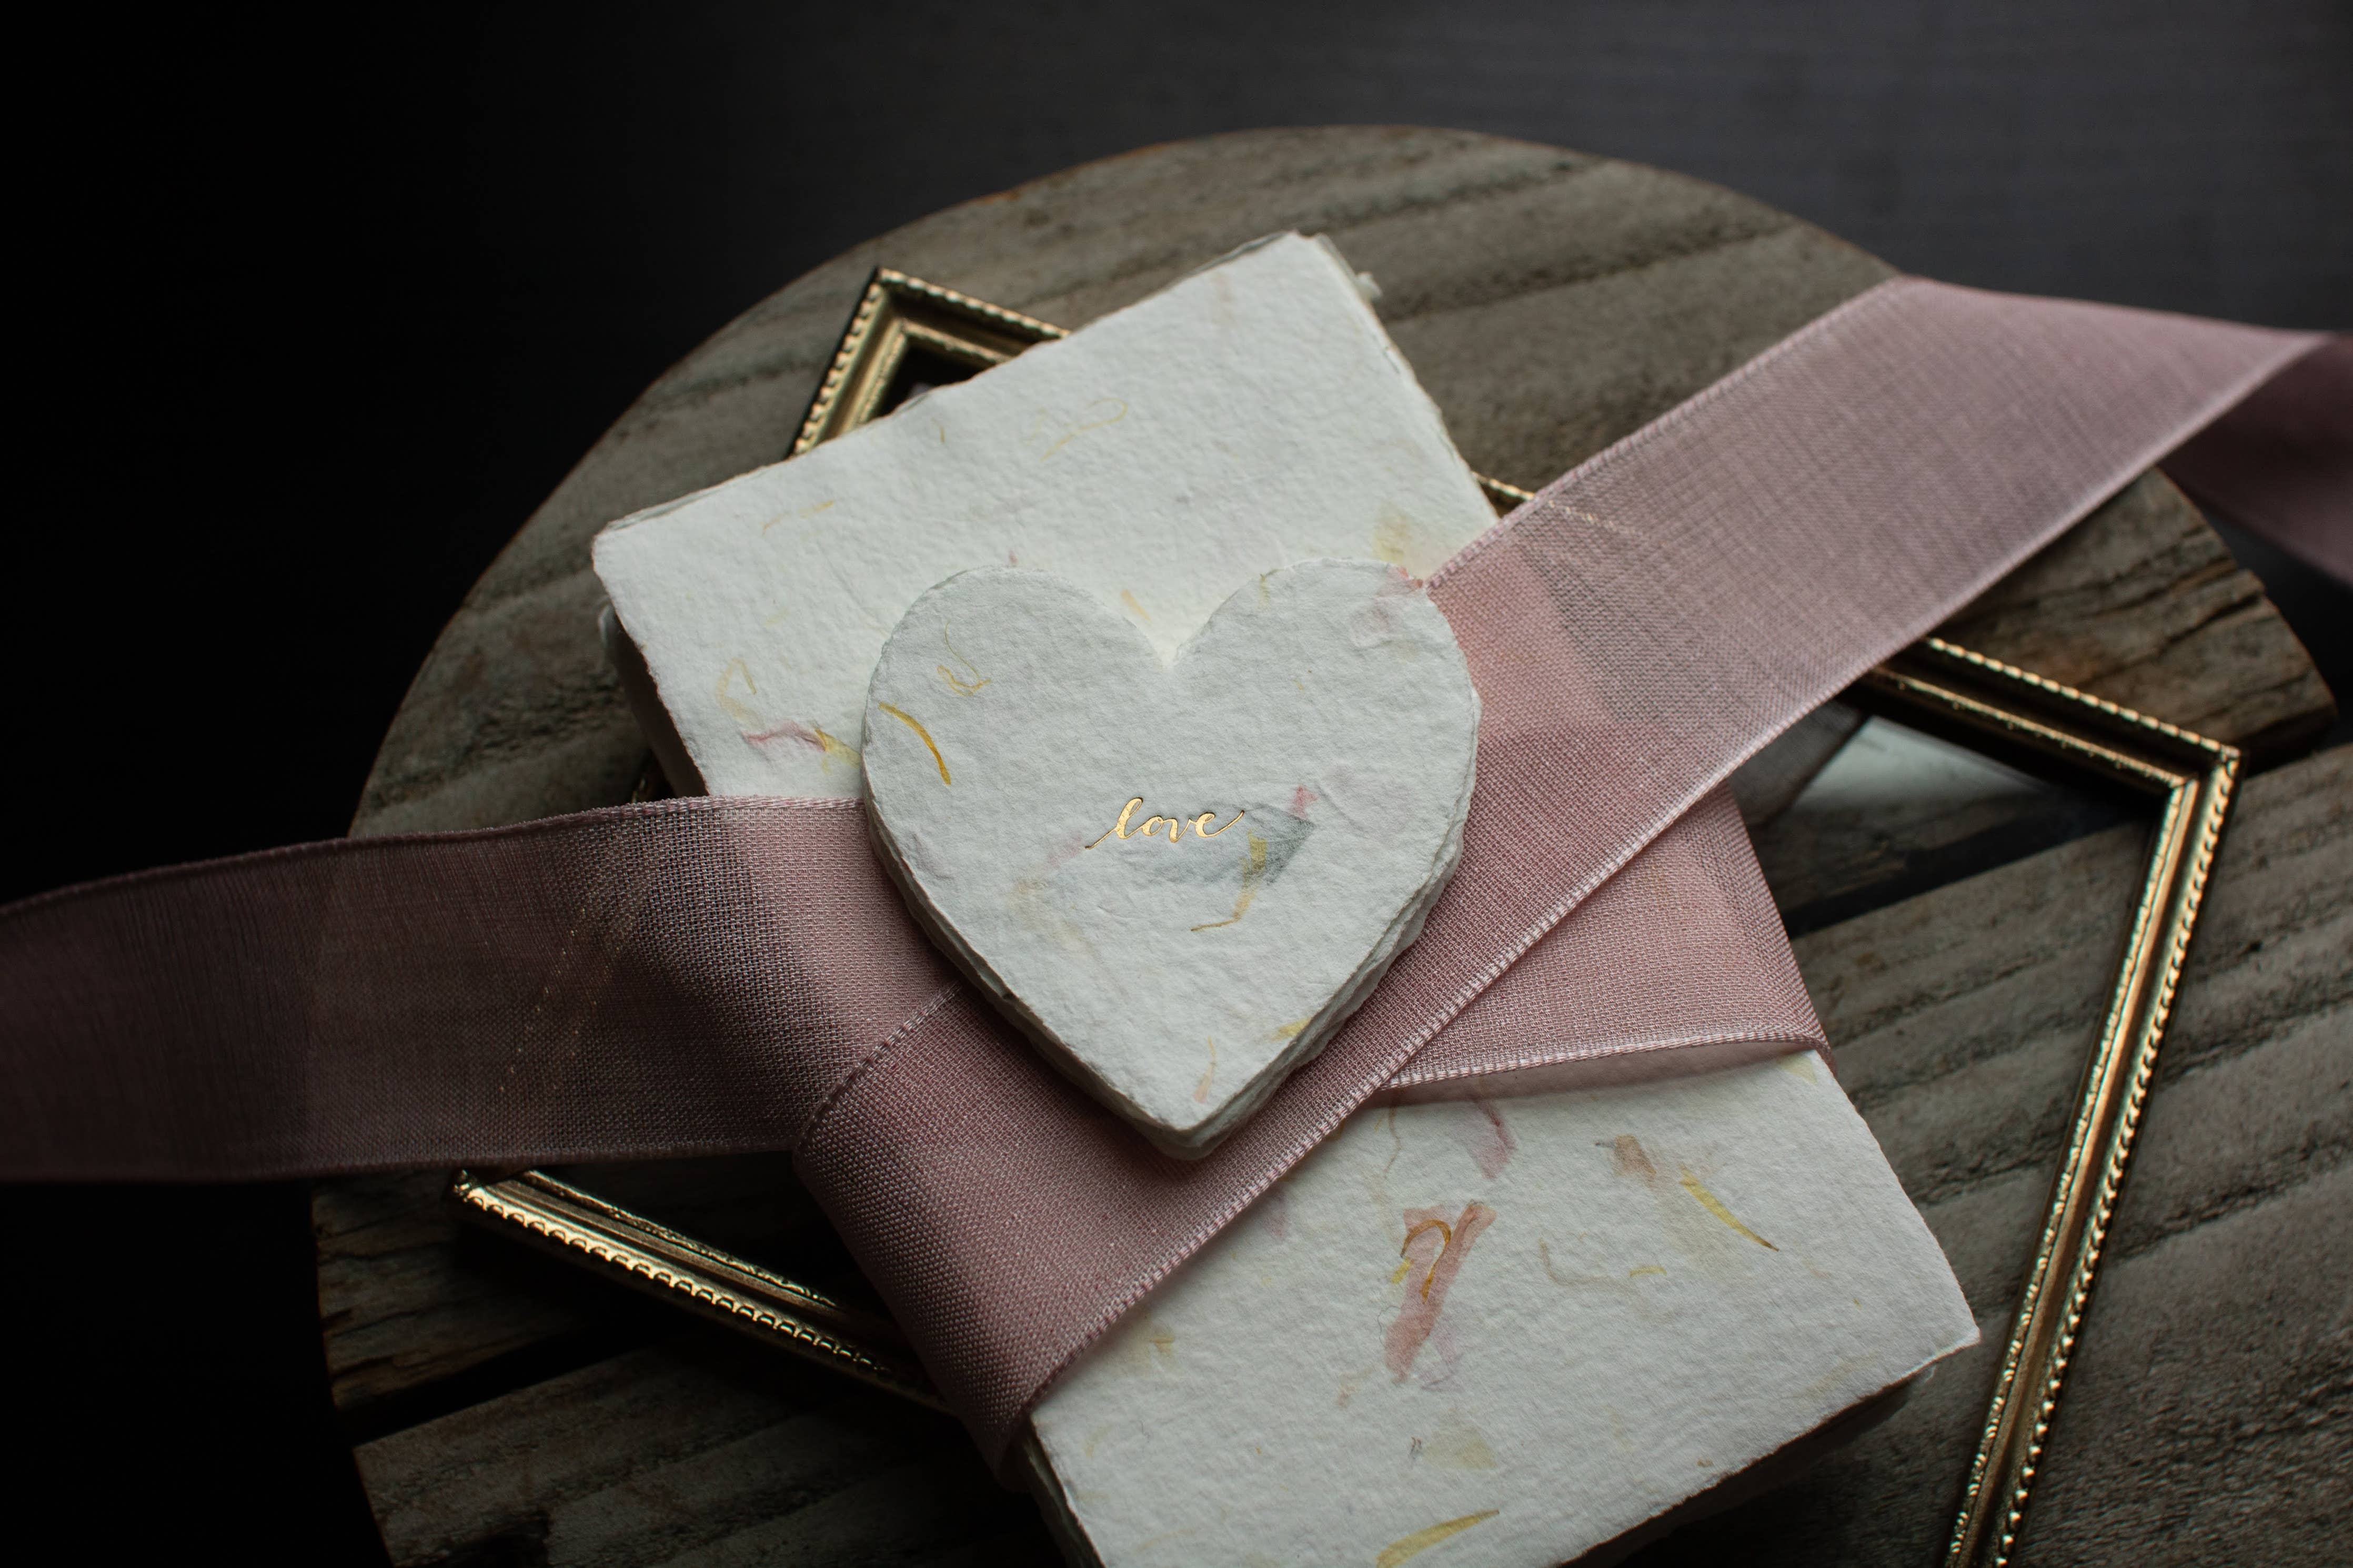 Love Petite Foiled Handmade Paper Letterpress Heart